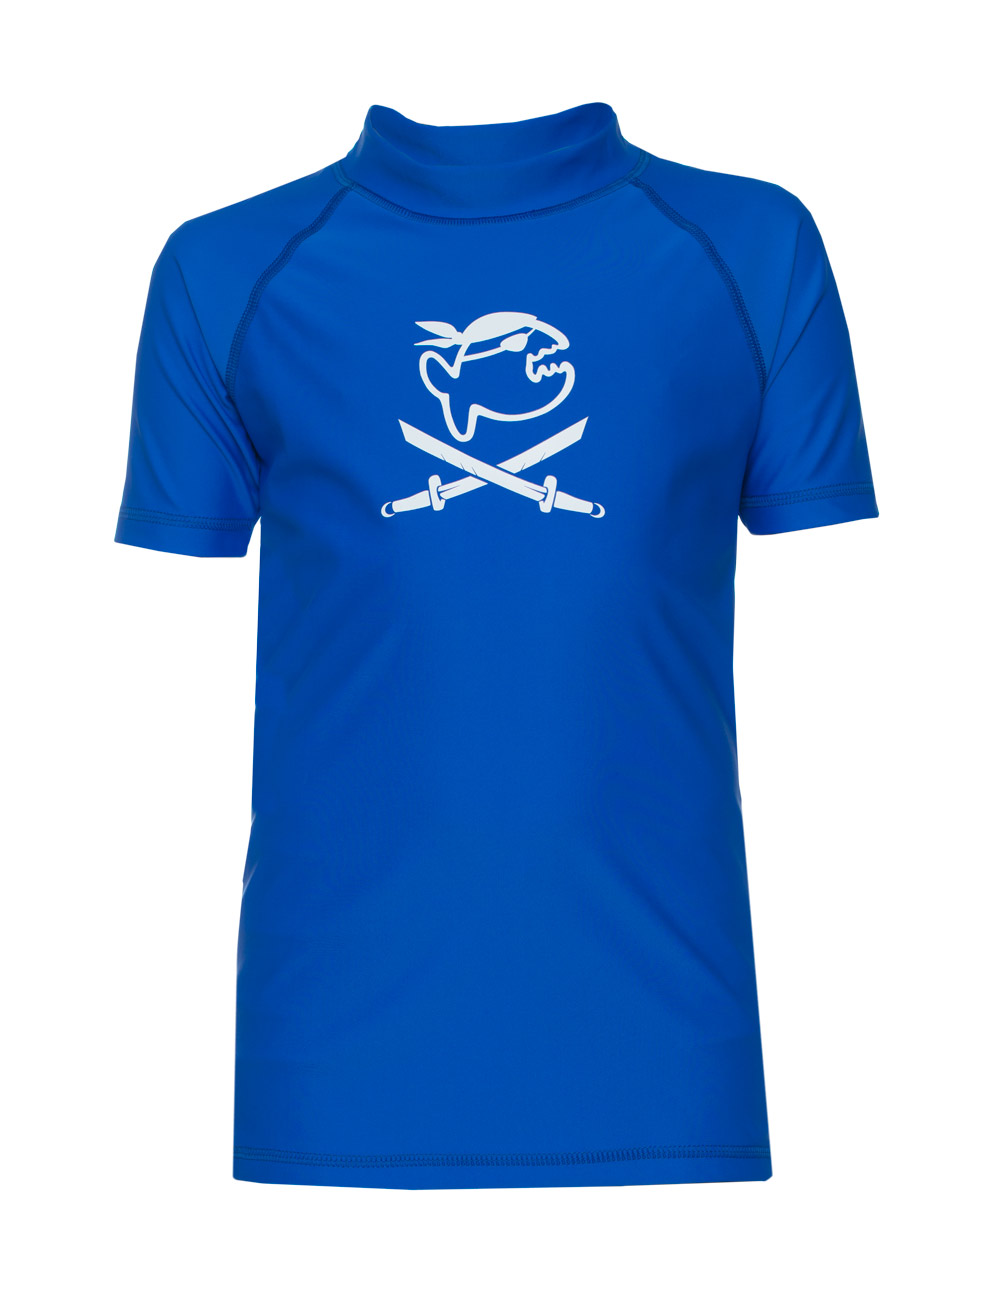 UV Sonnenschutz T-Shirt elastisch UV LSF 50+ und TüV geprüft Kinder blau Pirat